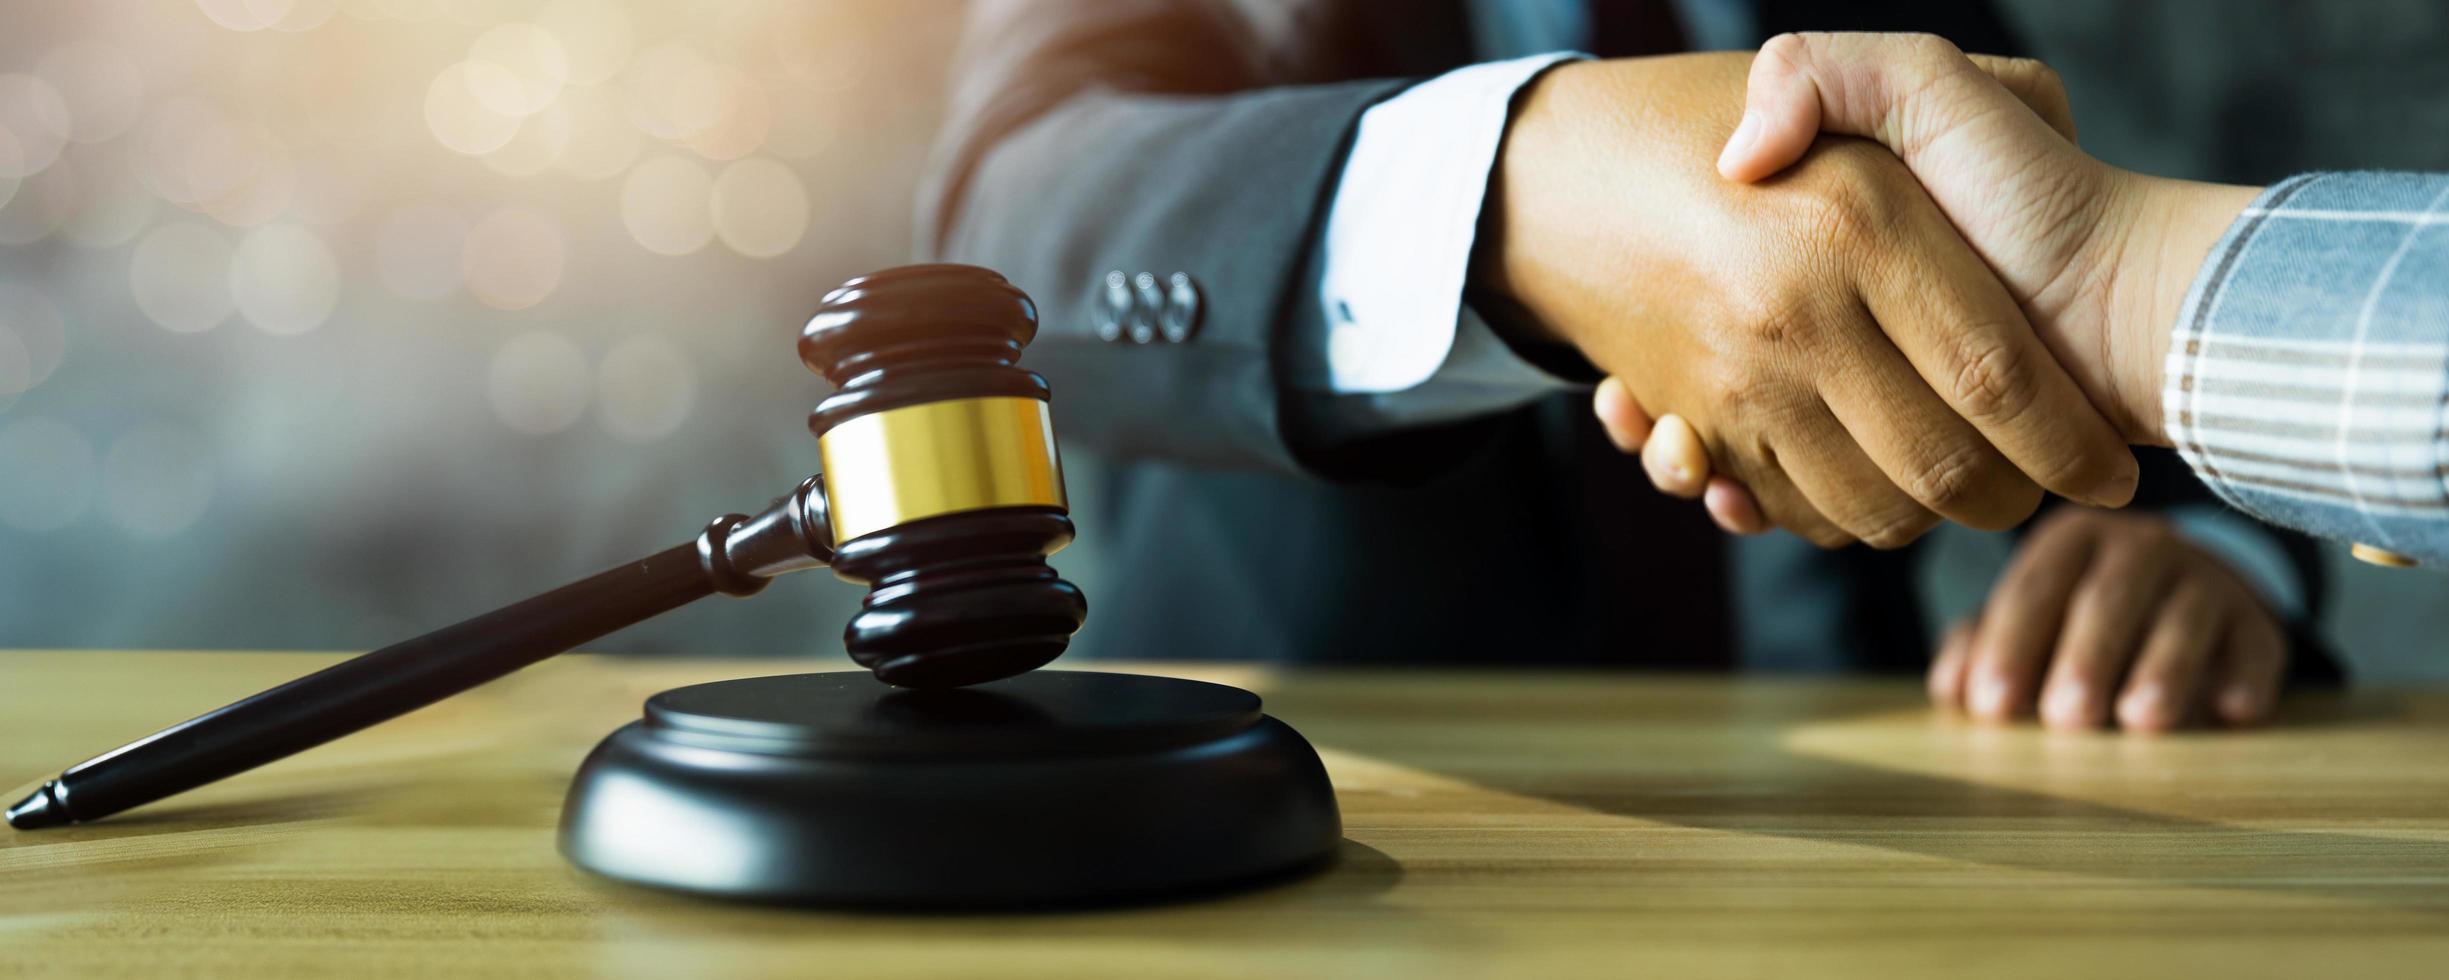 Rechtsberater oder Rechtsanwaltsassistent schütteln dem Klienten oder Kunden nach erfolgreichem Urteil die Hand und gewinnen, Konzept für Recht und Gerechtigkeit foto